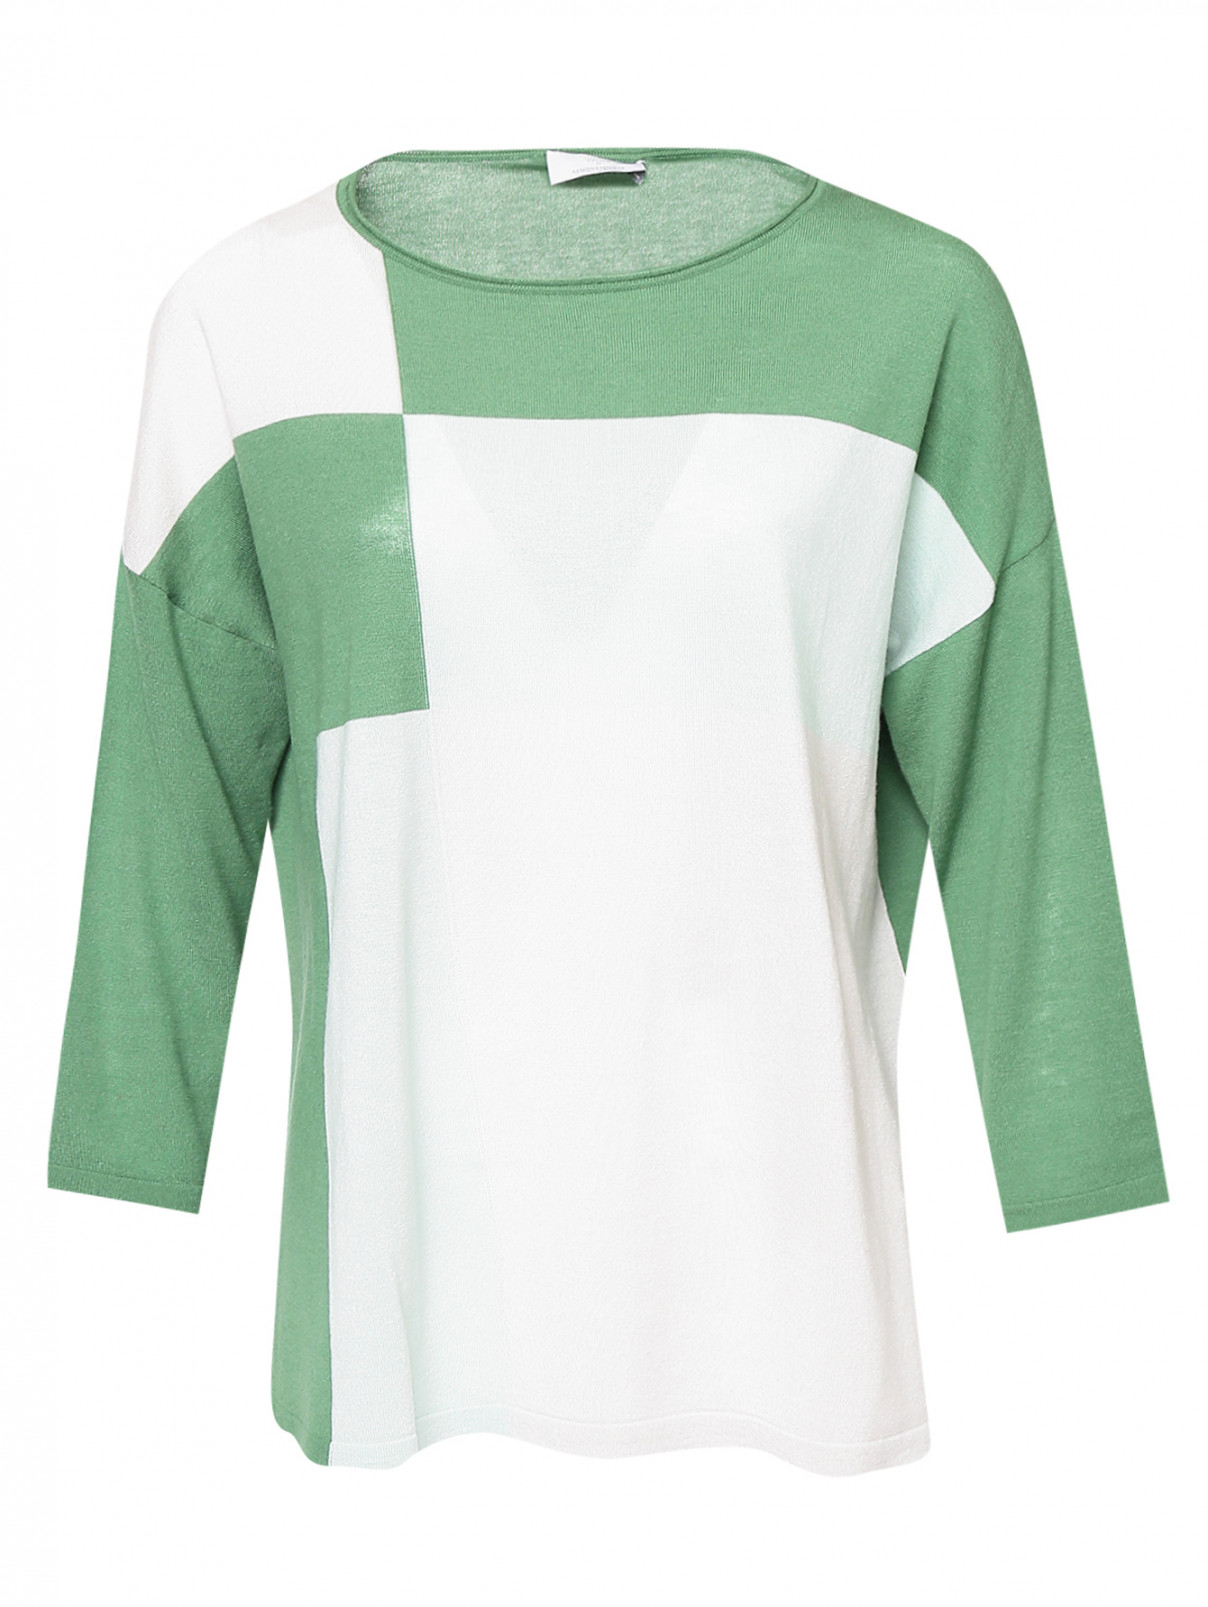 Джемпер из шерсти и кашемира в стиле колор блок Marina Rinaldi  –  Общий вид  – Цвет:  Зеленый